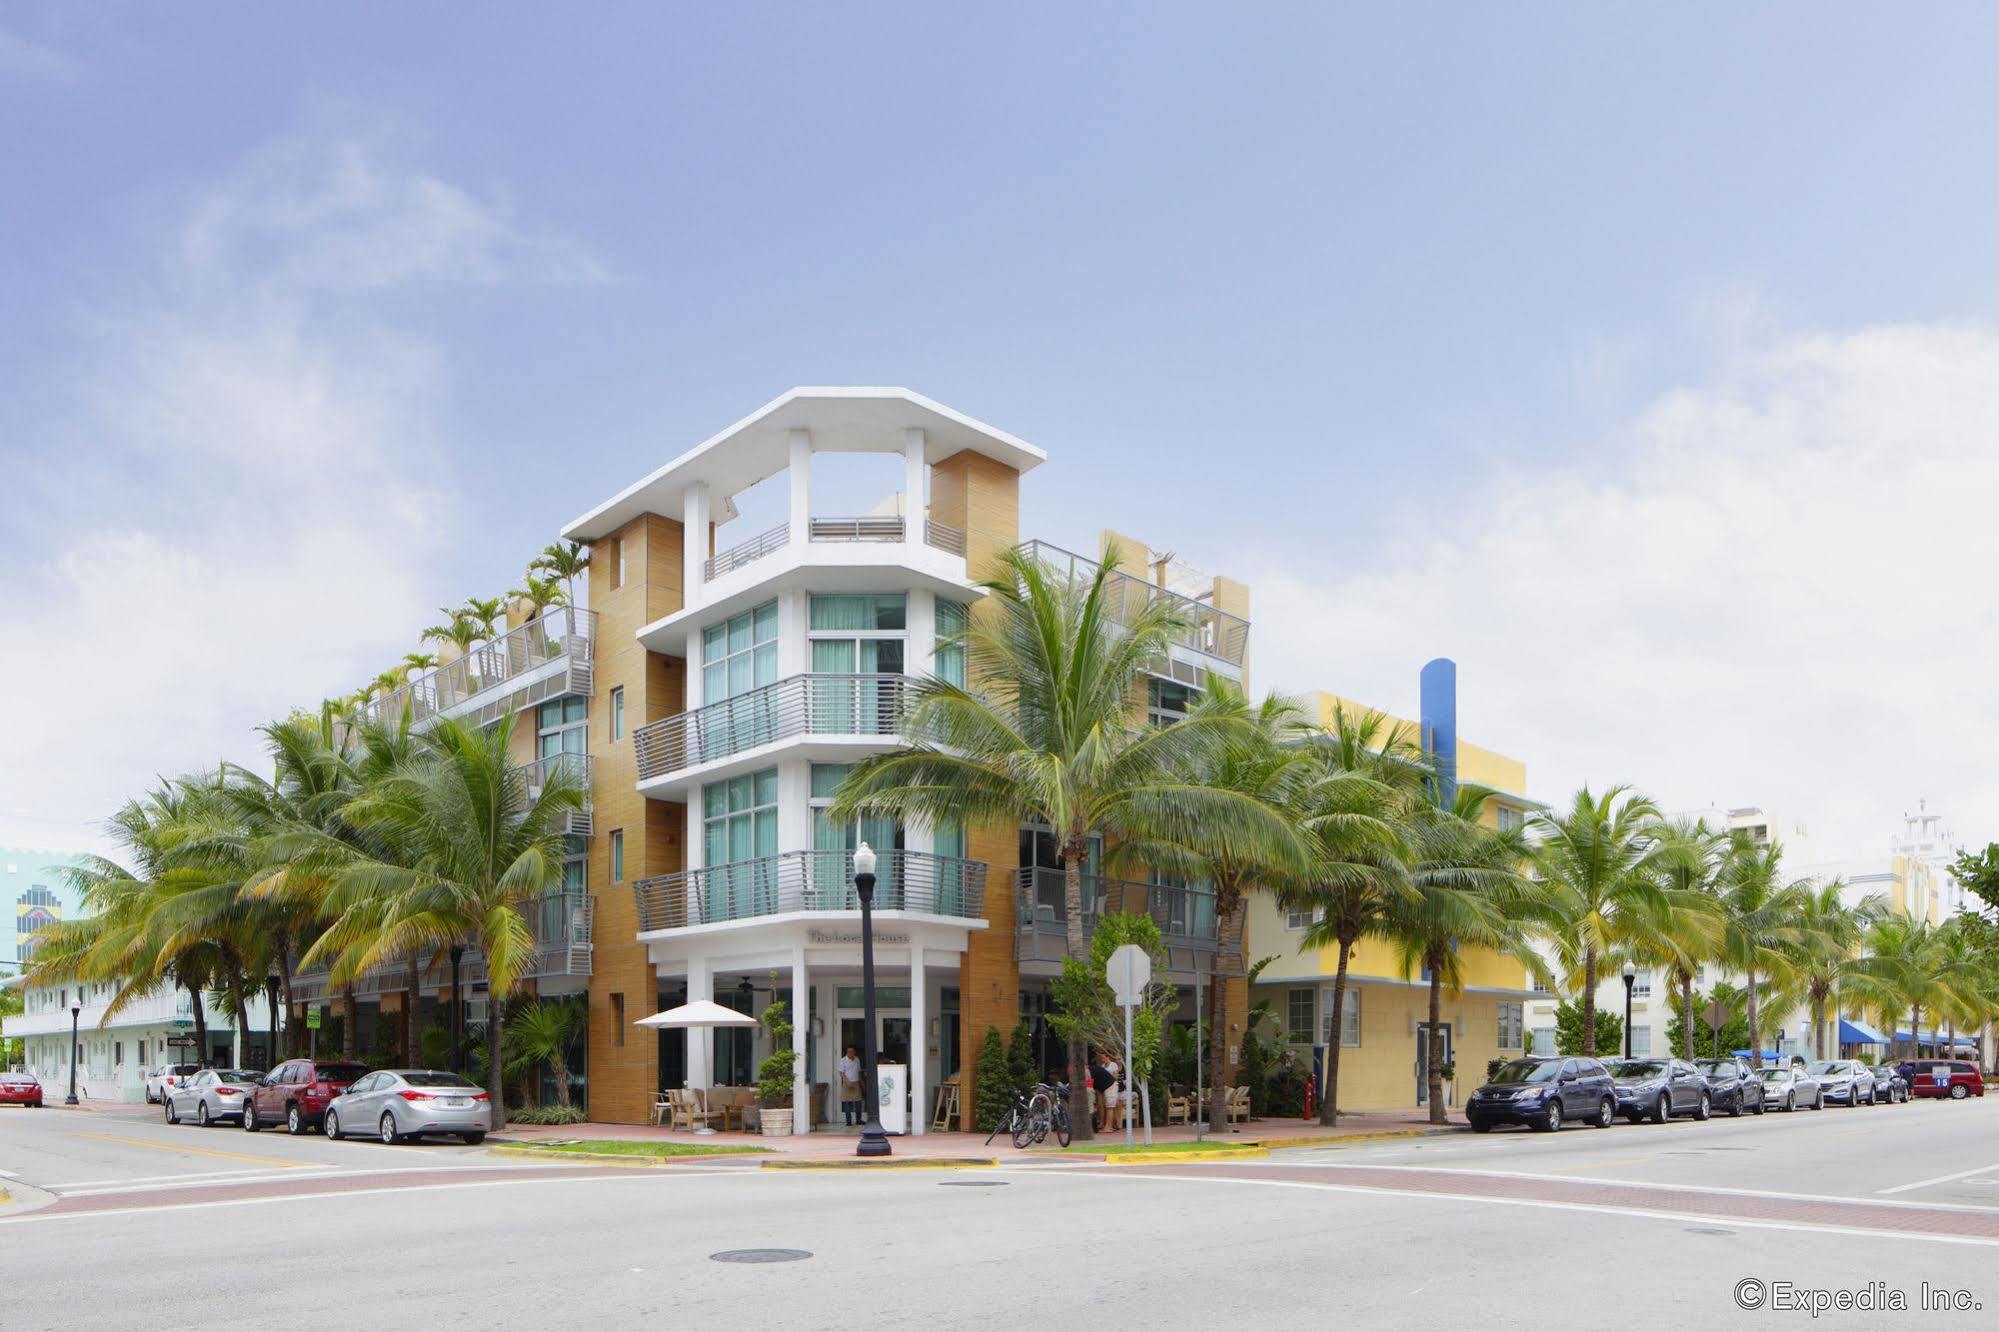 The Local House Hotel Miami Beach Esterno foto